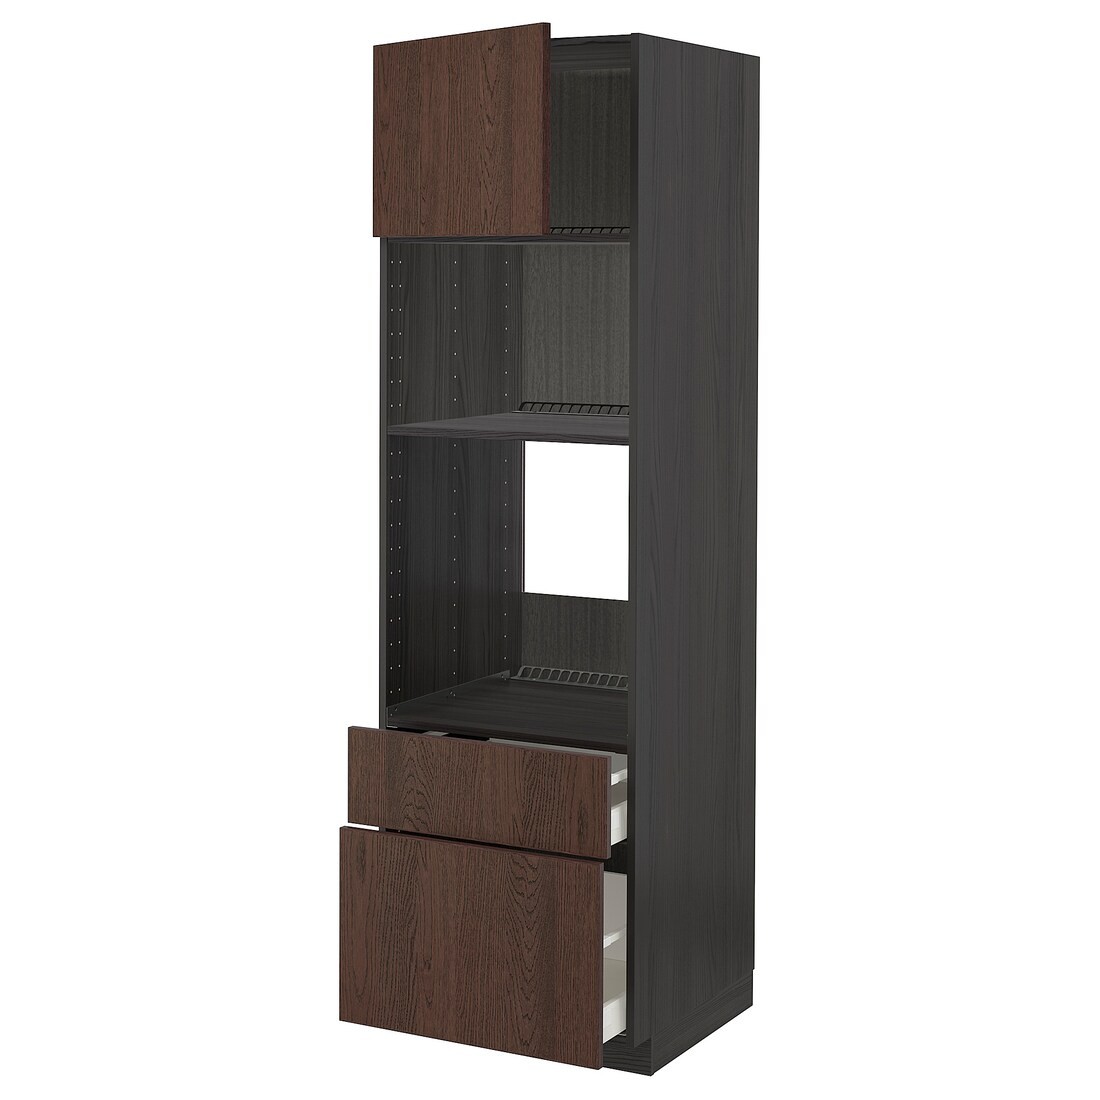 METOD МЕТОД / MAXIMERA МАКСИМЕРА Высокий шкаф для духовки / микроволновки с дверями / 2 ящиками, черный / Sinarp коричневый, 60x60x200 см